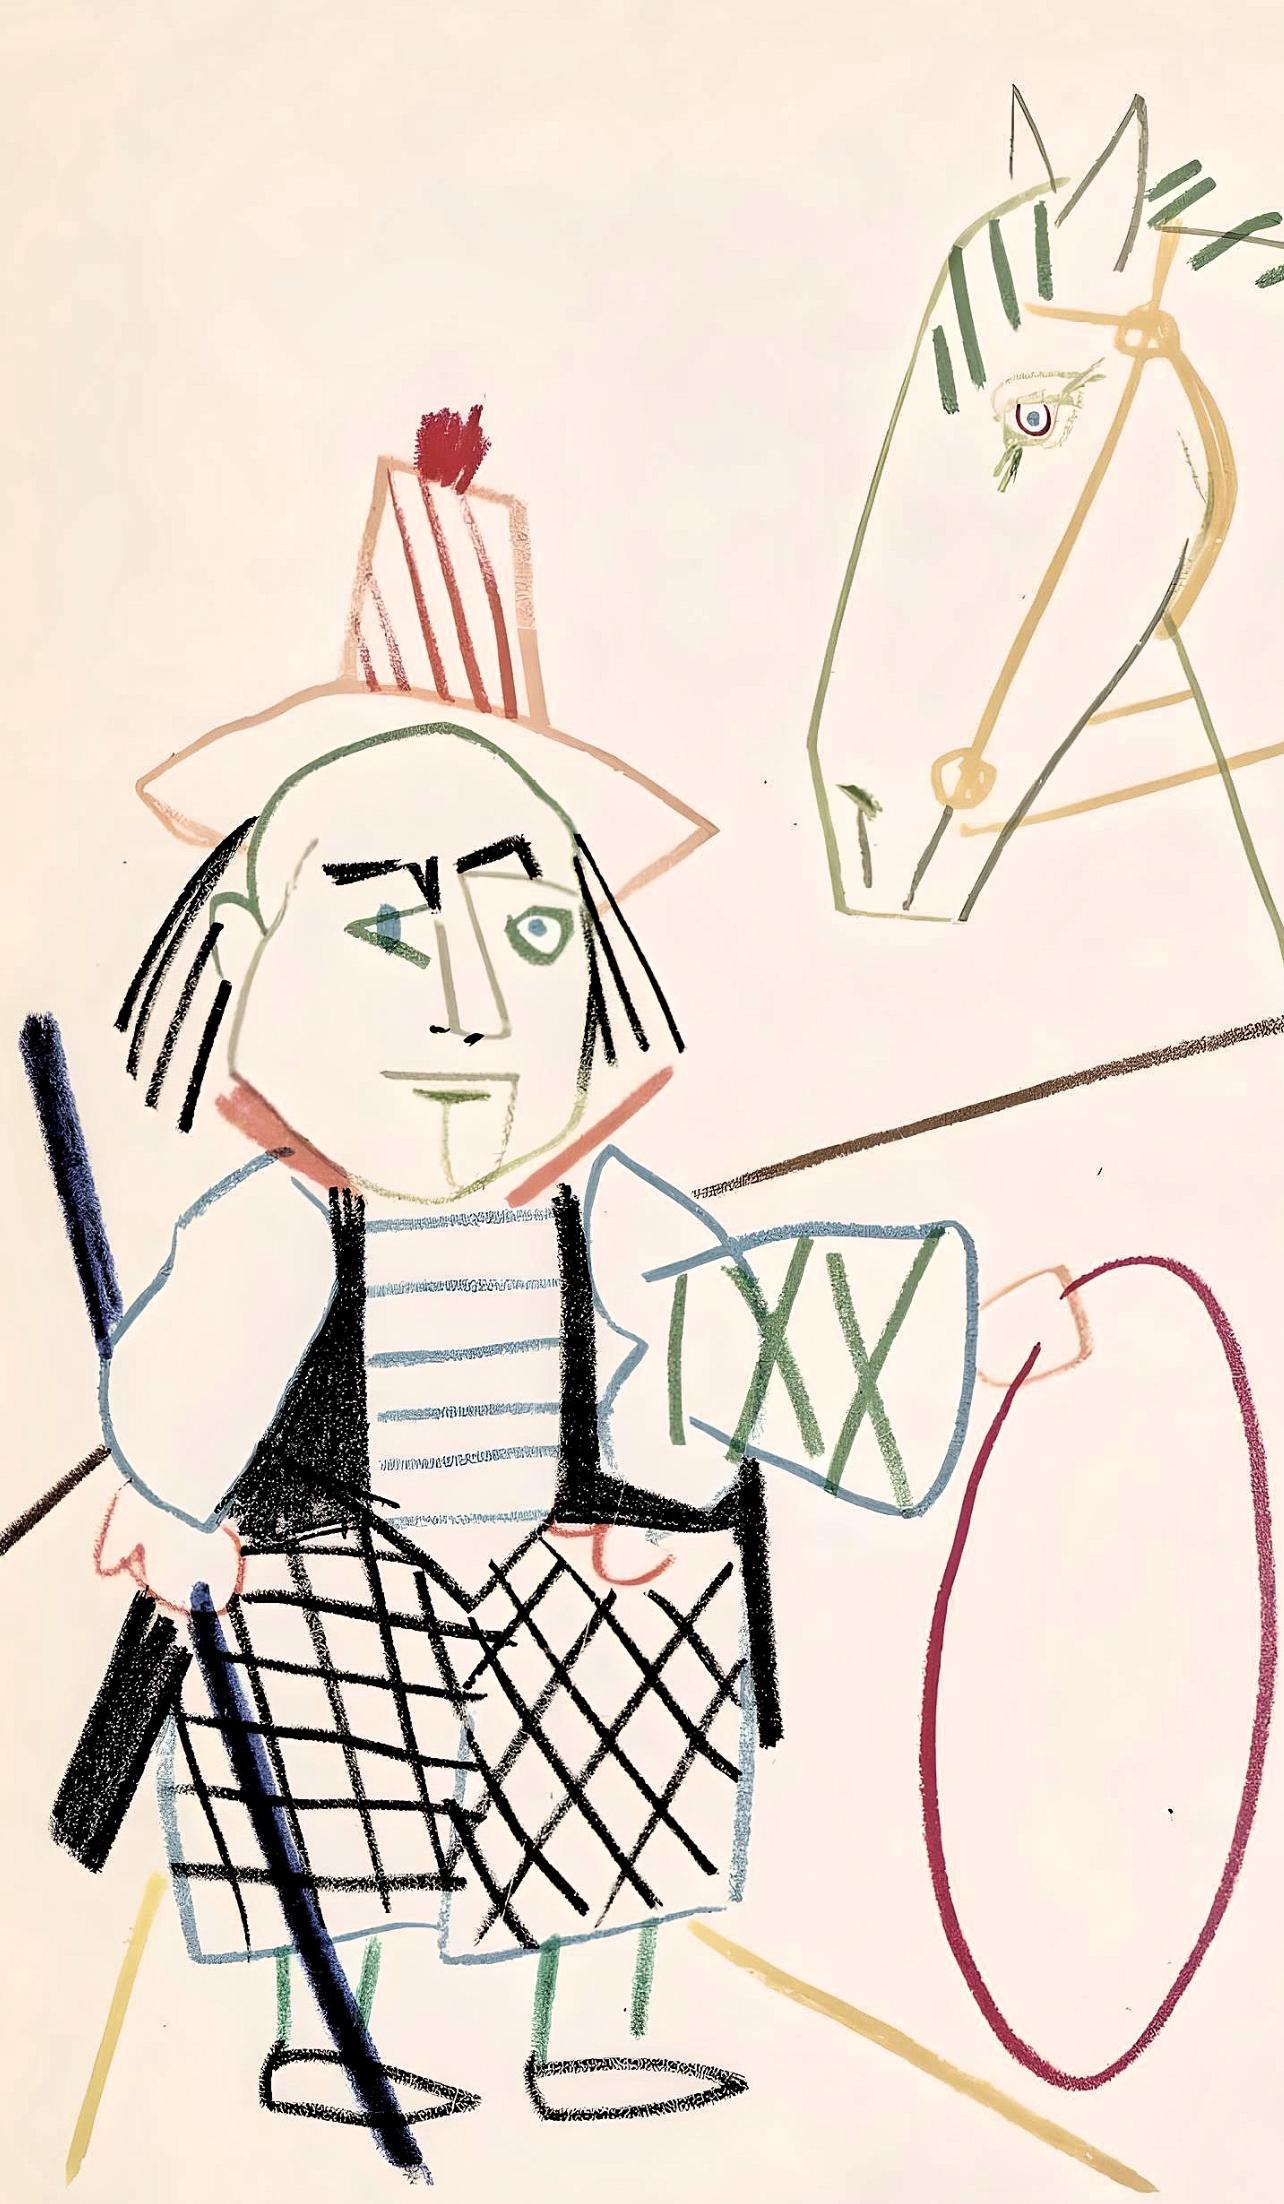 Picasso, Composition, La Comédie Humaine (after) - Print by Pablo Picasso